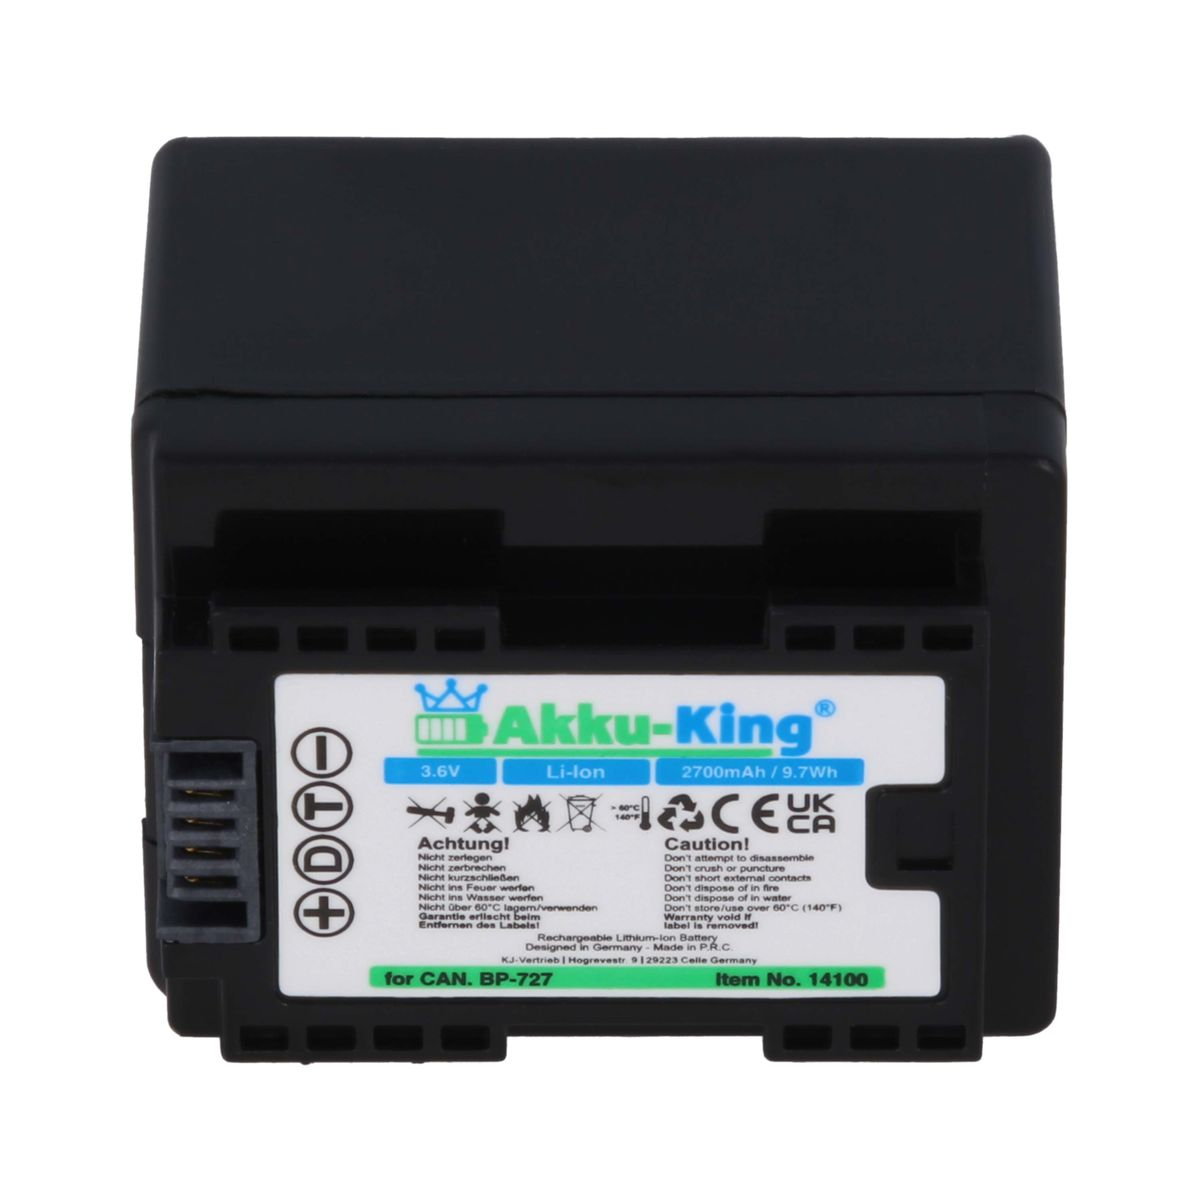 AKKU-KING Akku kompatibel mit Canon BP-727 2700mAh Li-Ion Kamera-Akku, 3.6 Volt